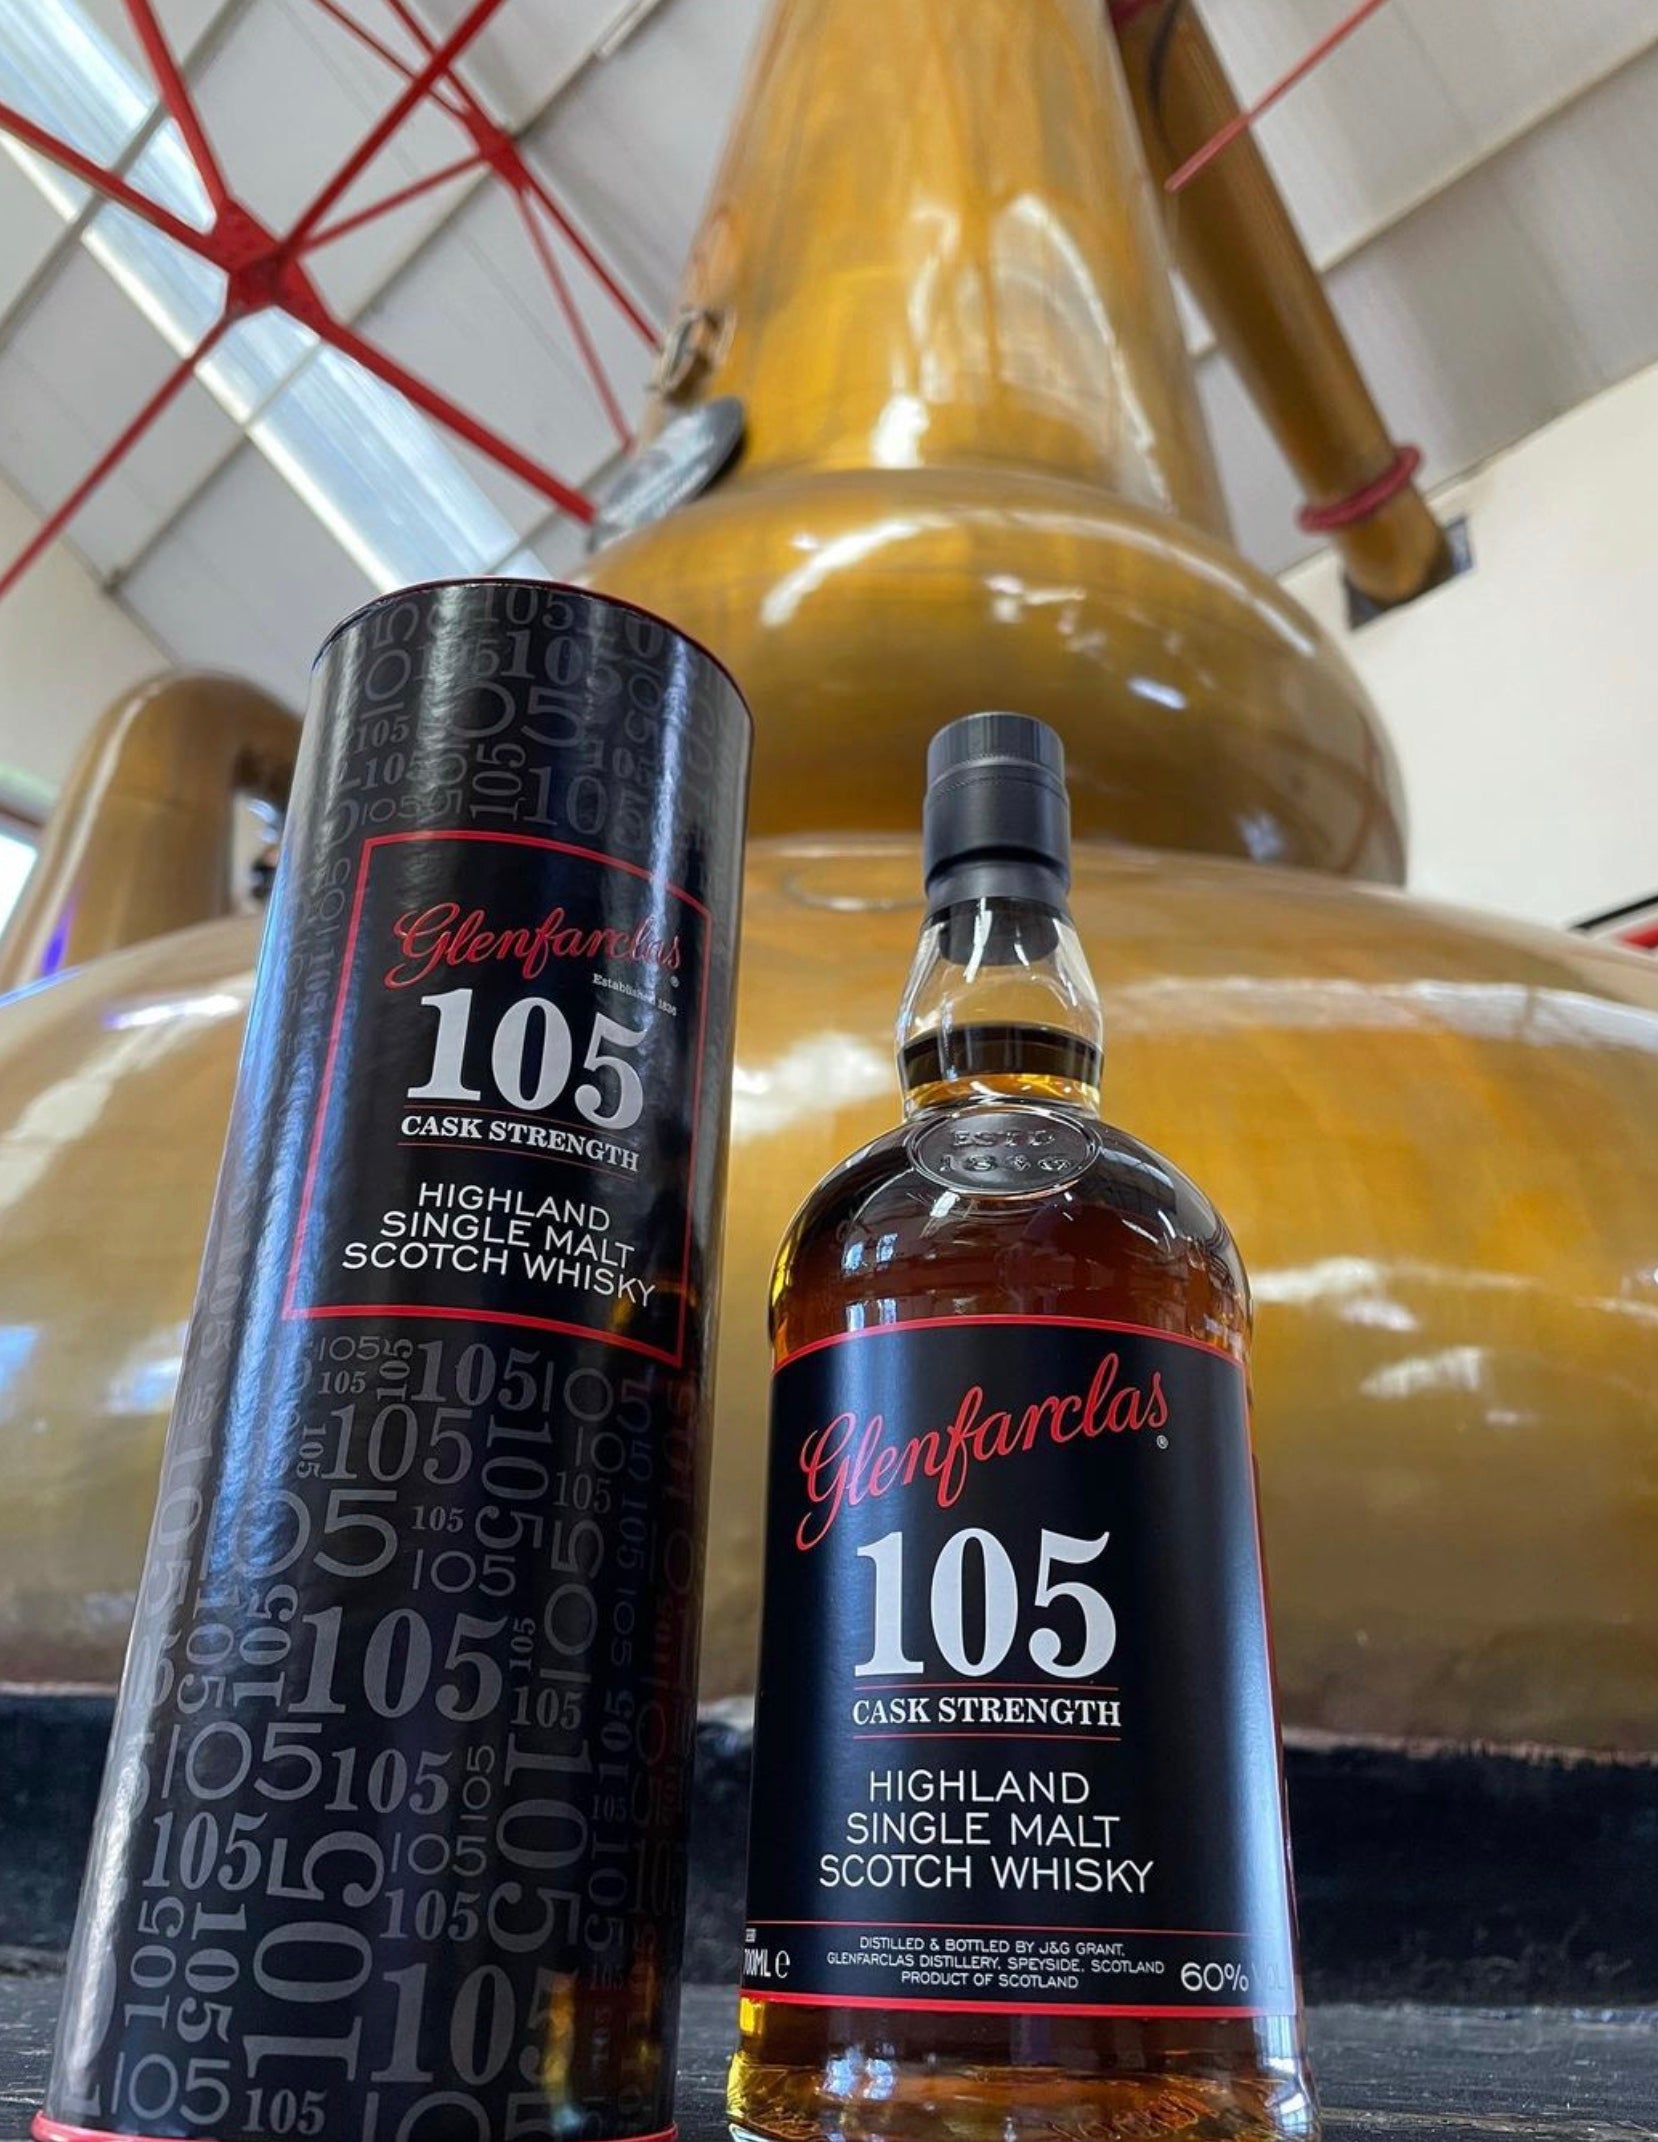 Glenfarclas 105 Cask Strength Scotch Whisky